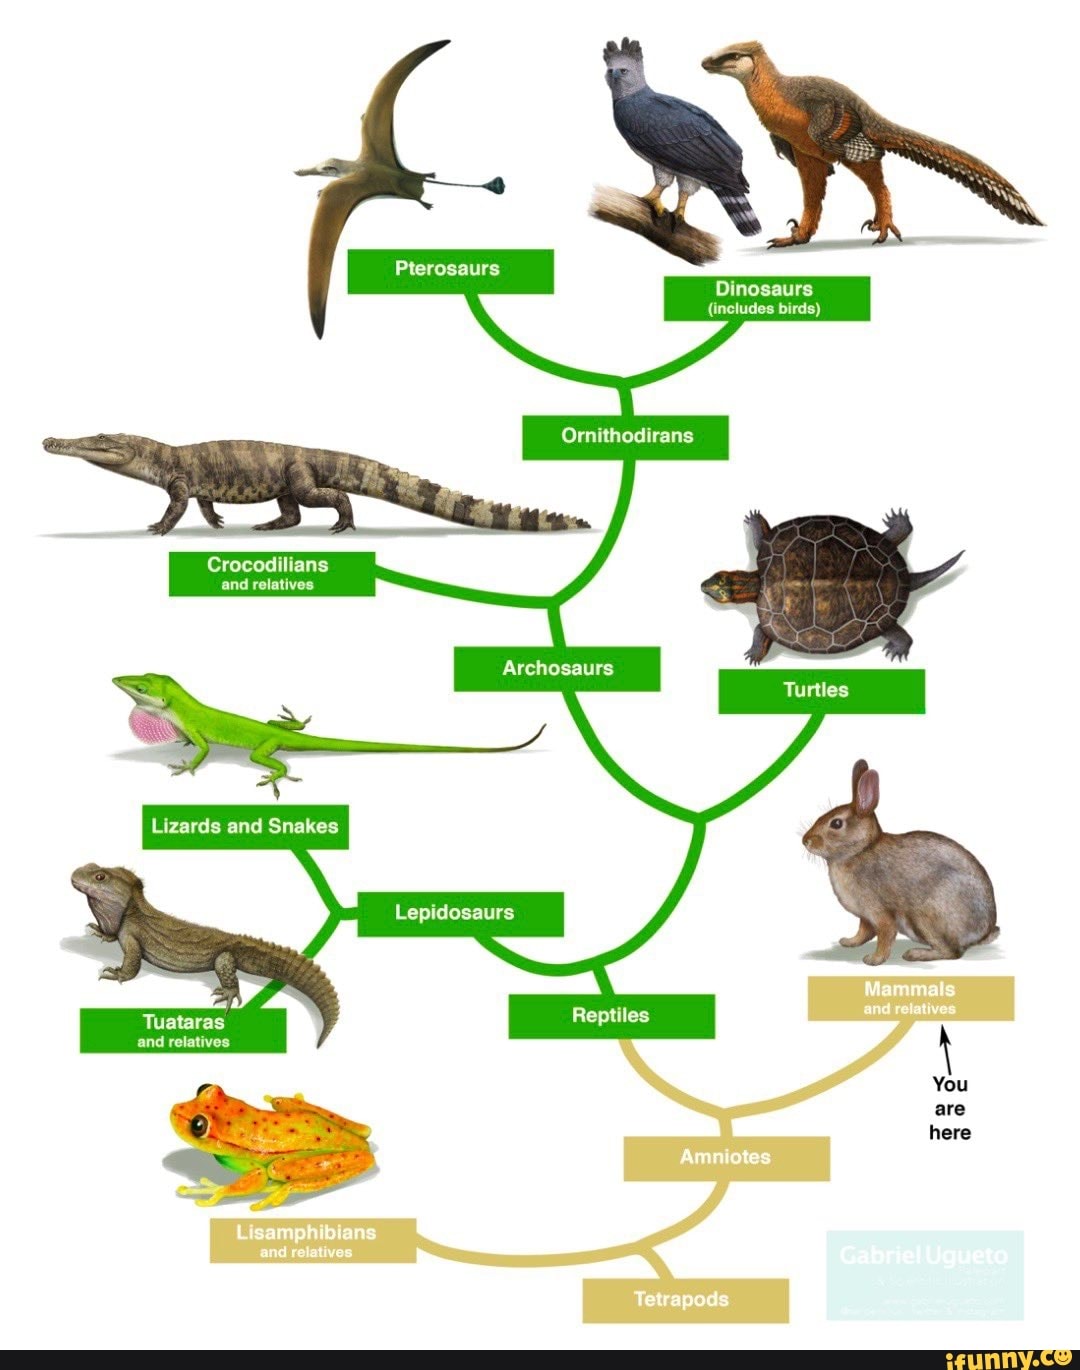 Сравнение ящерицы и птицы. Филогенетическое Древо рептилий. Эволюционное Древо рептилий. Эволюционное Древо архозавров. Схема систематика пресмыкающихся.